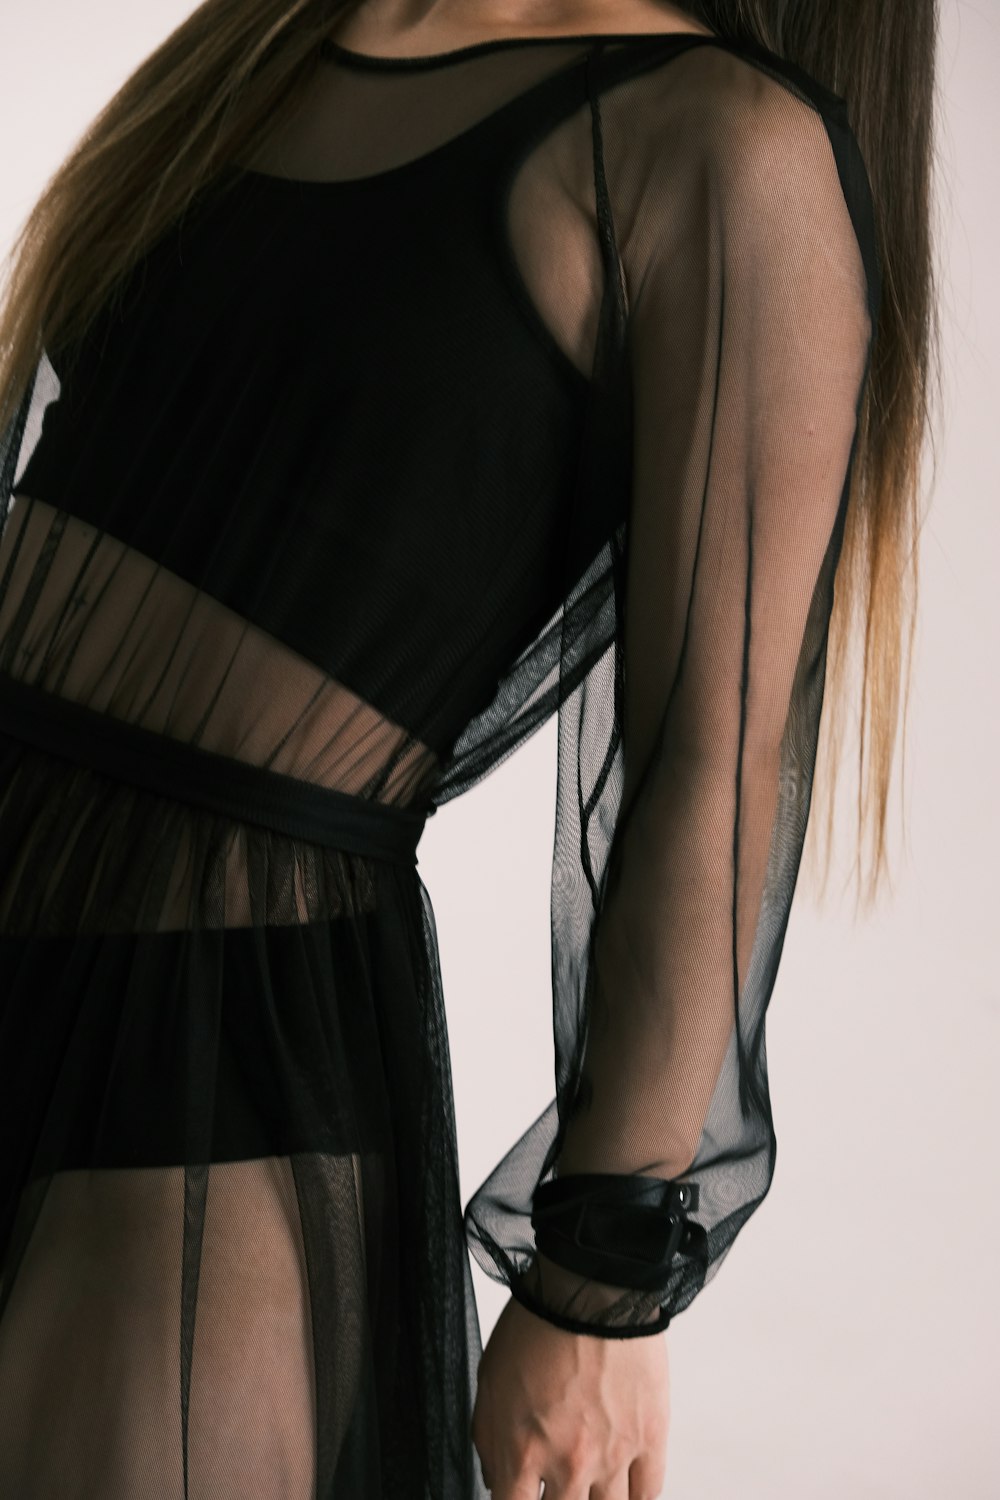 Une femme portant une robe noire transparente avec des manches transparentes  photo – Photo Mode Gratuite sur Unsplash